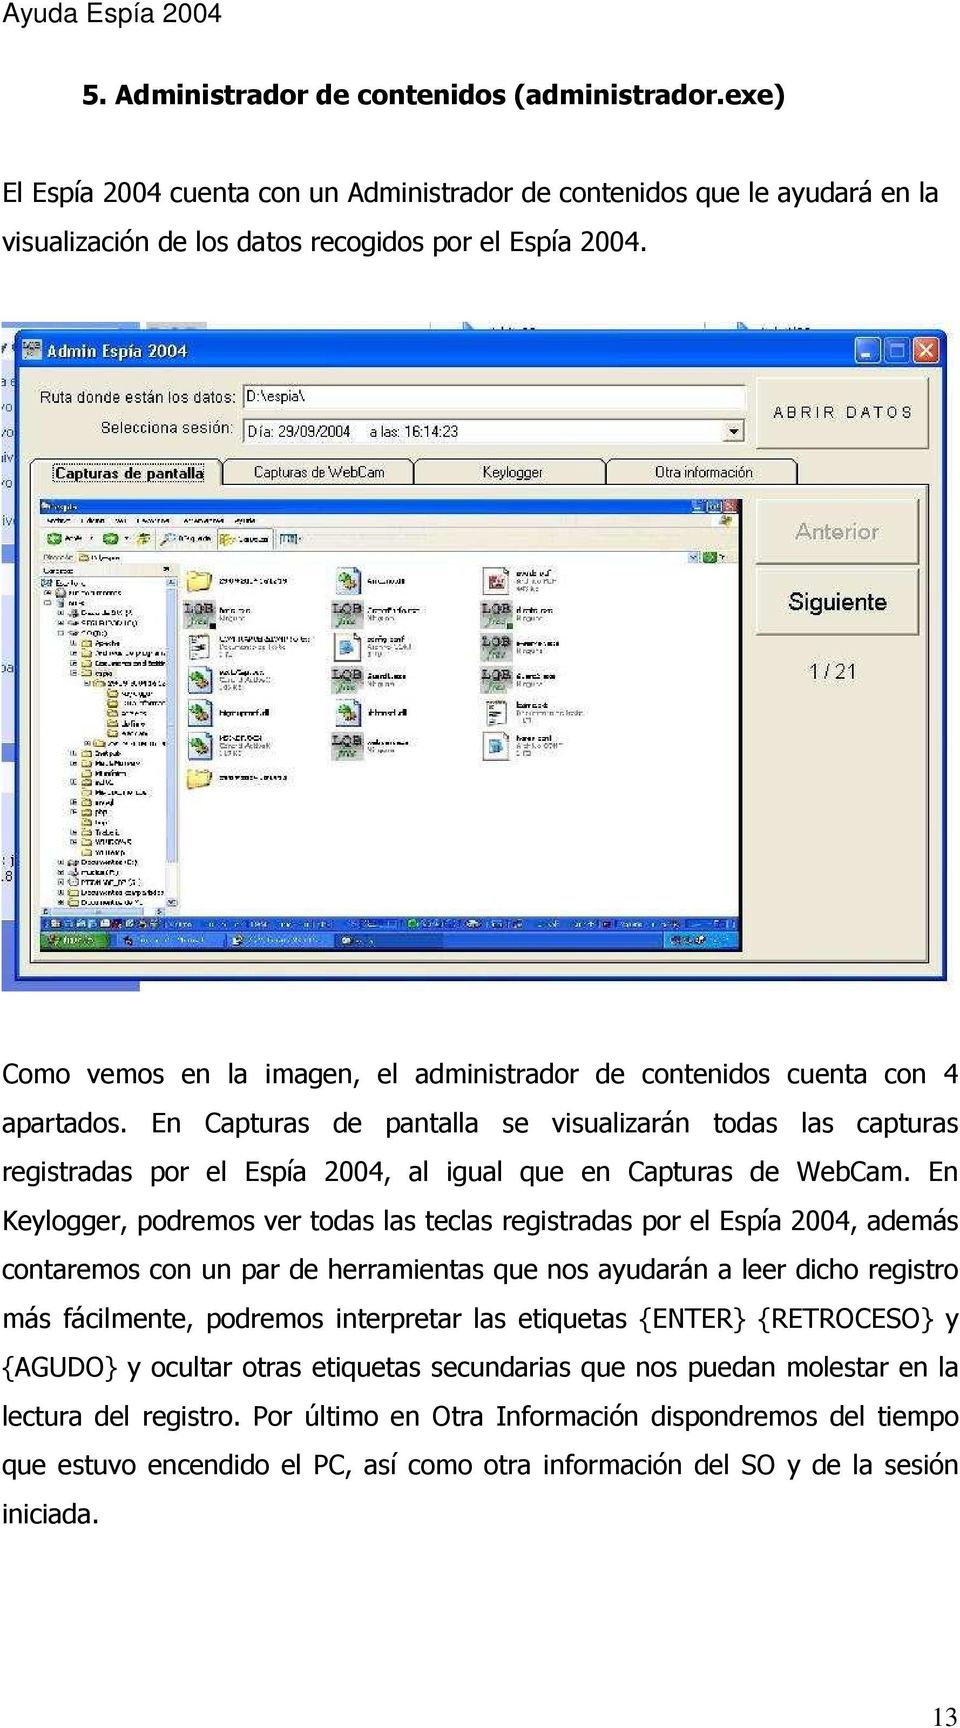 En Capturas de pantalla se visualizarán todas las capturas registradas por el Espía 2004, al igual que en Capturas de WebCam.